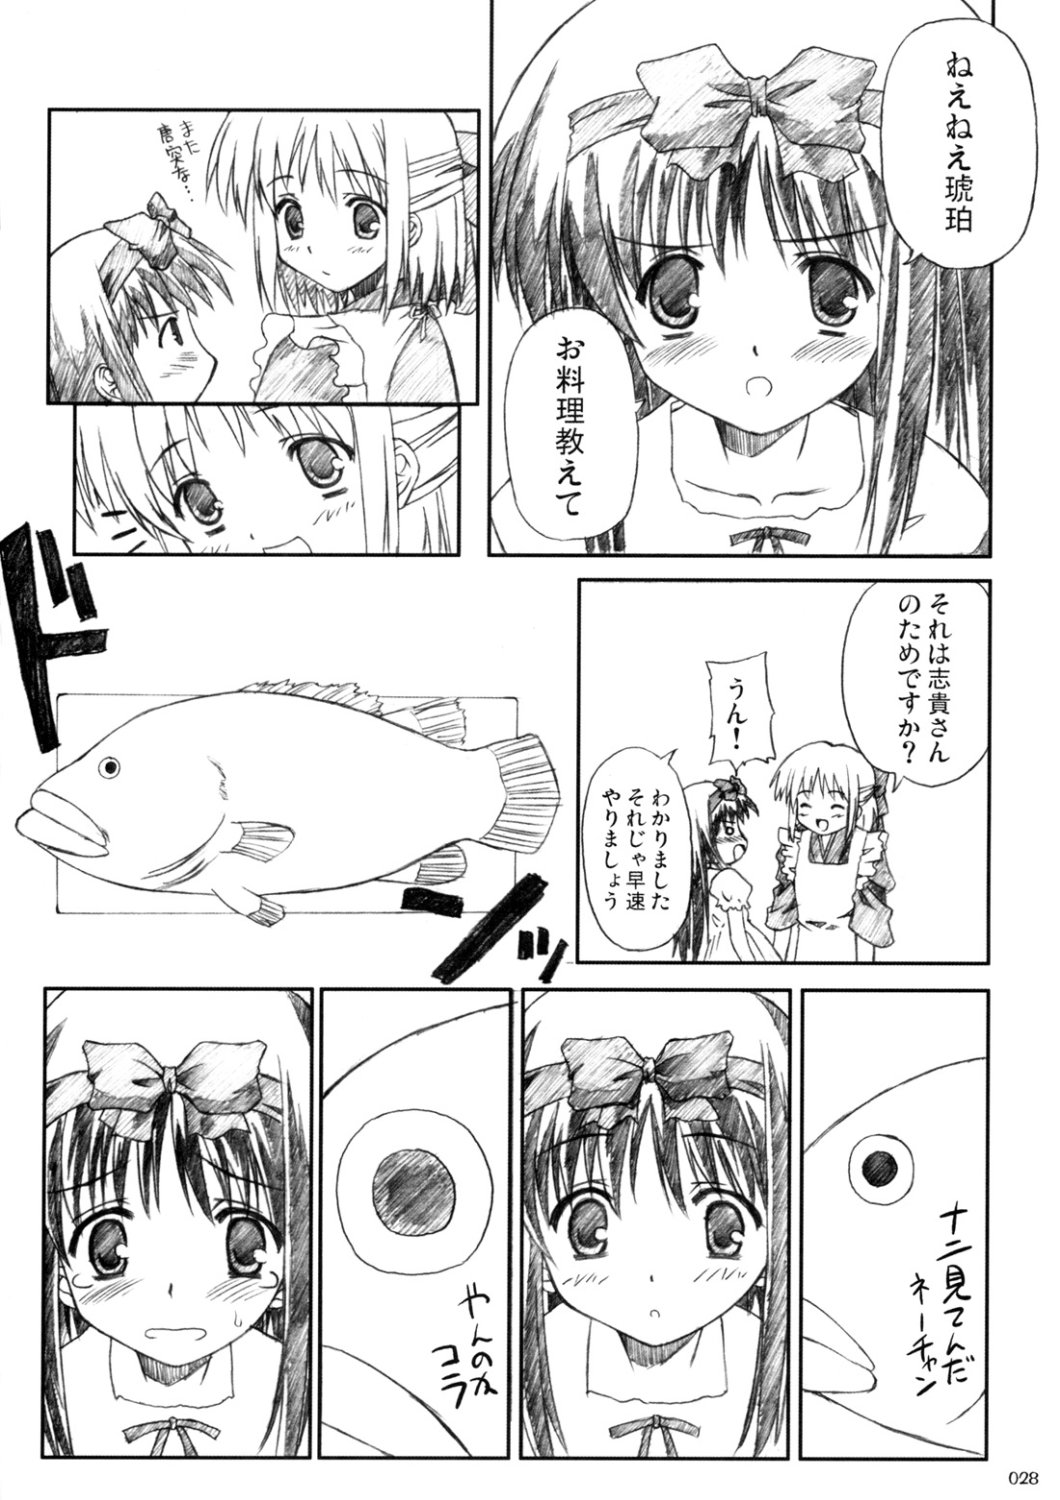 [Inochi no Furusato, Neko-bus Tei, Zangyaku Koui Teate] Akihamania [AKIHA MANIACS] (Tsukihime) page 27 full